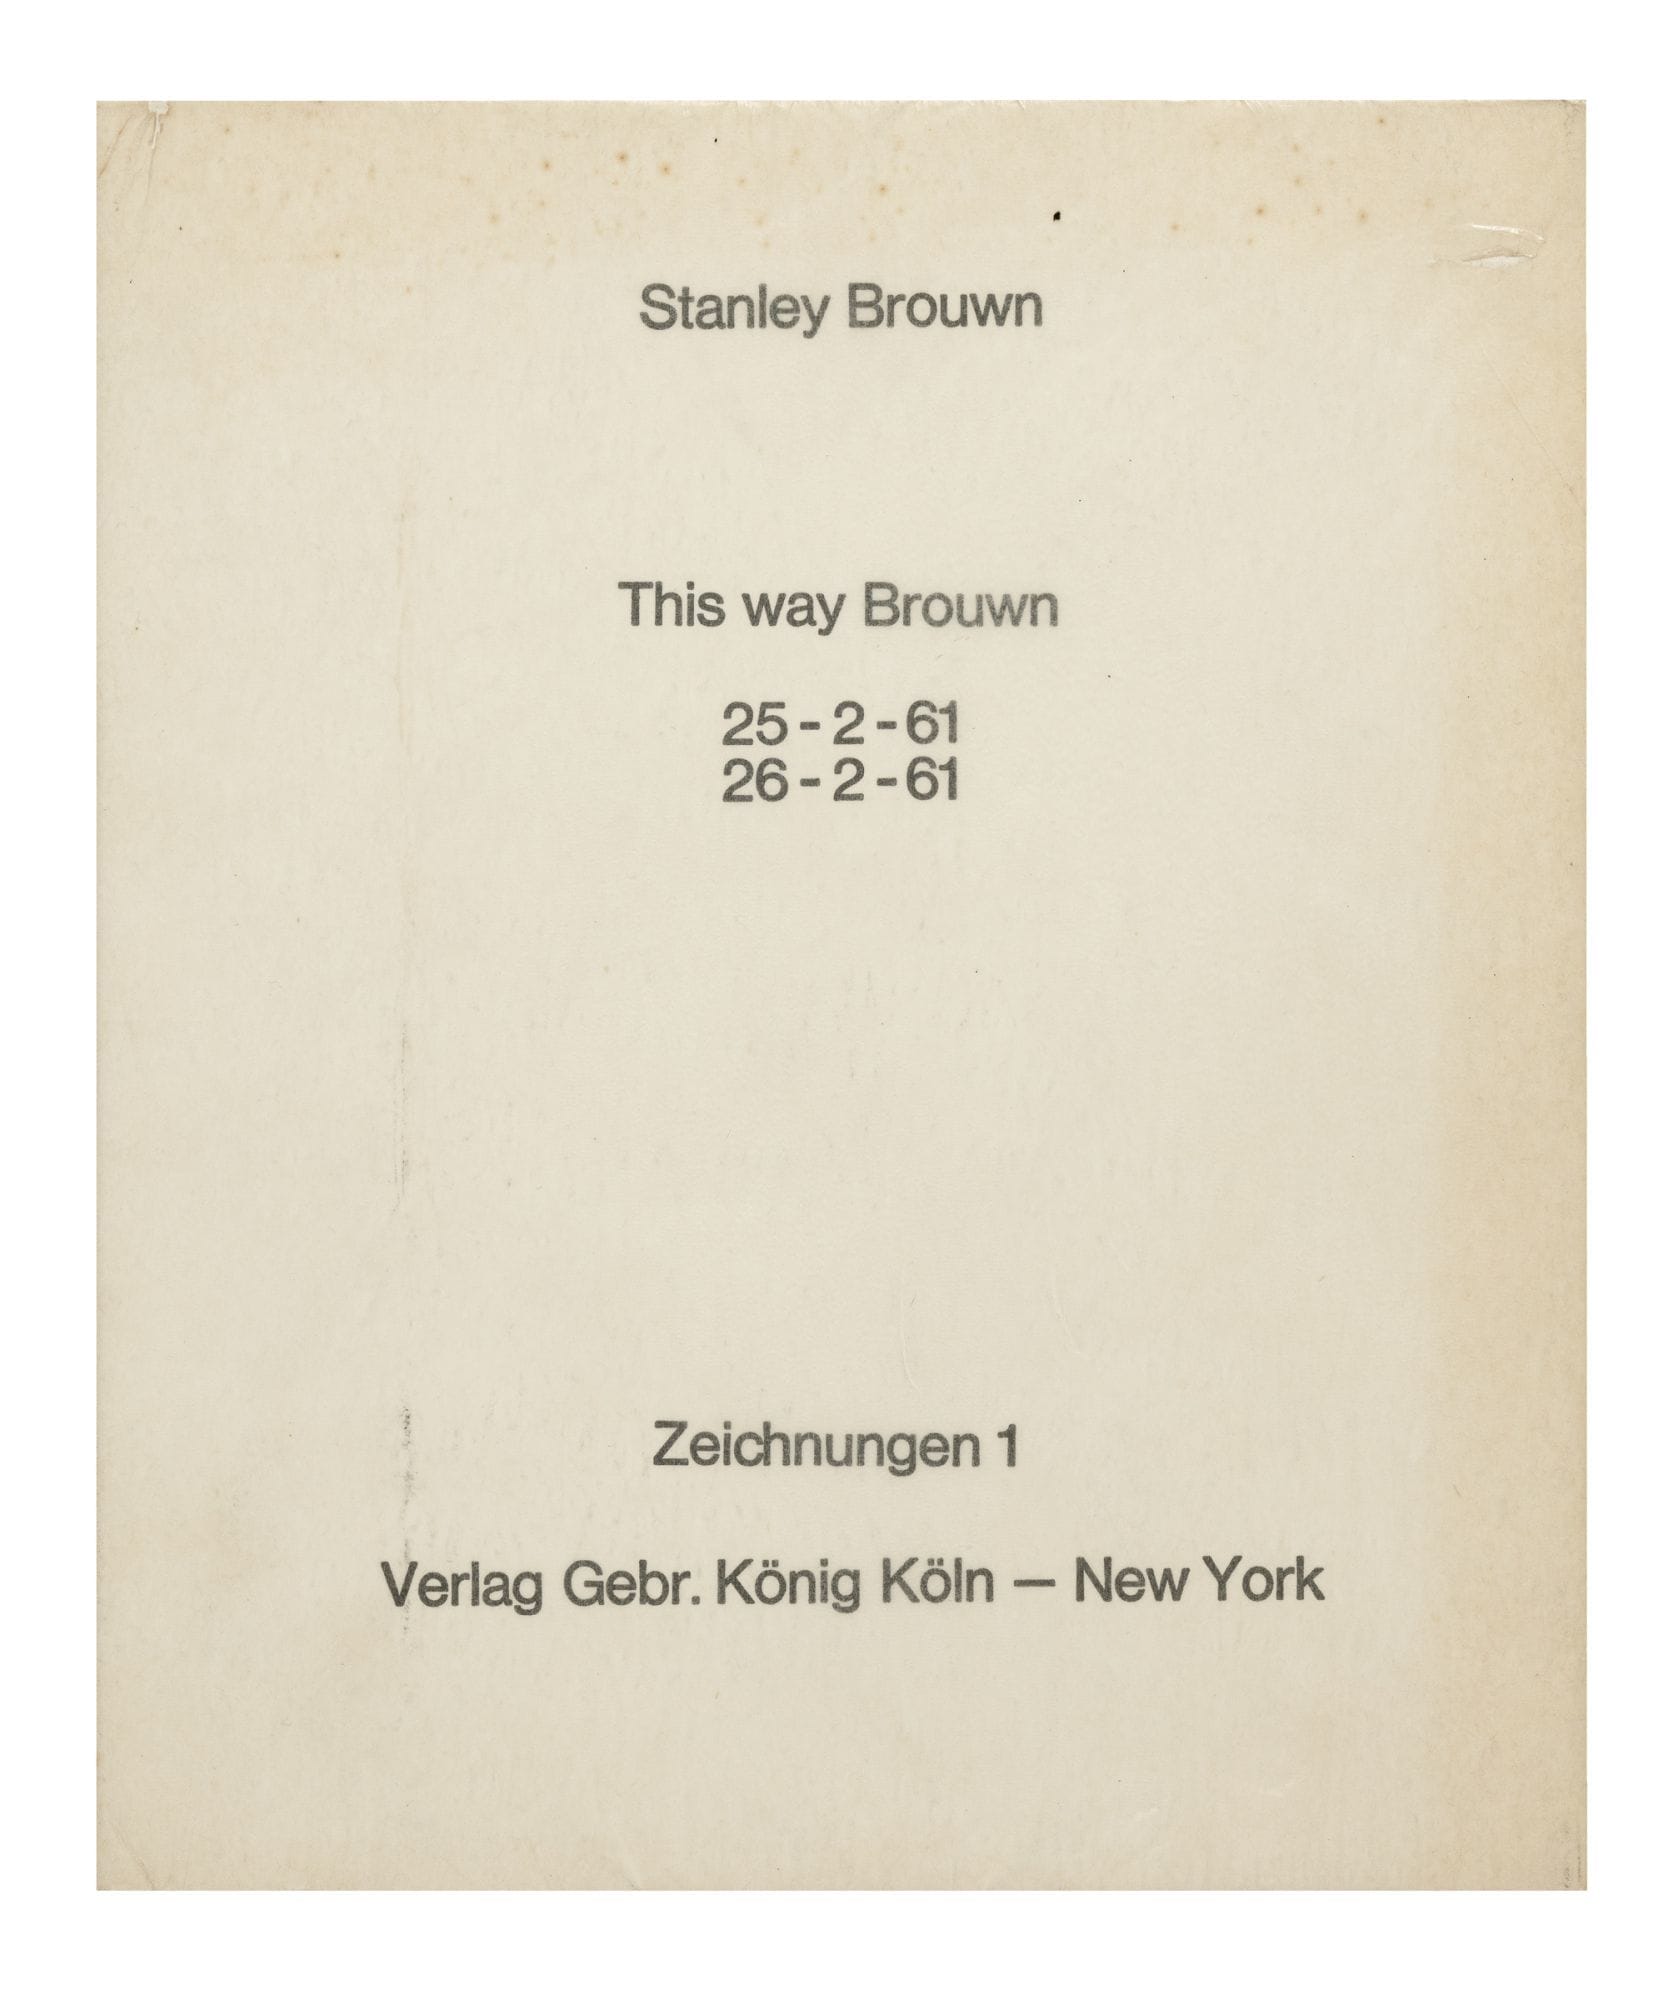 Stanley Brown, This way Brouwn, 25-2-61, 26-2-61: Zeichnungen 1